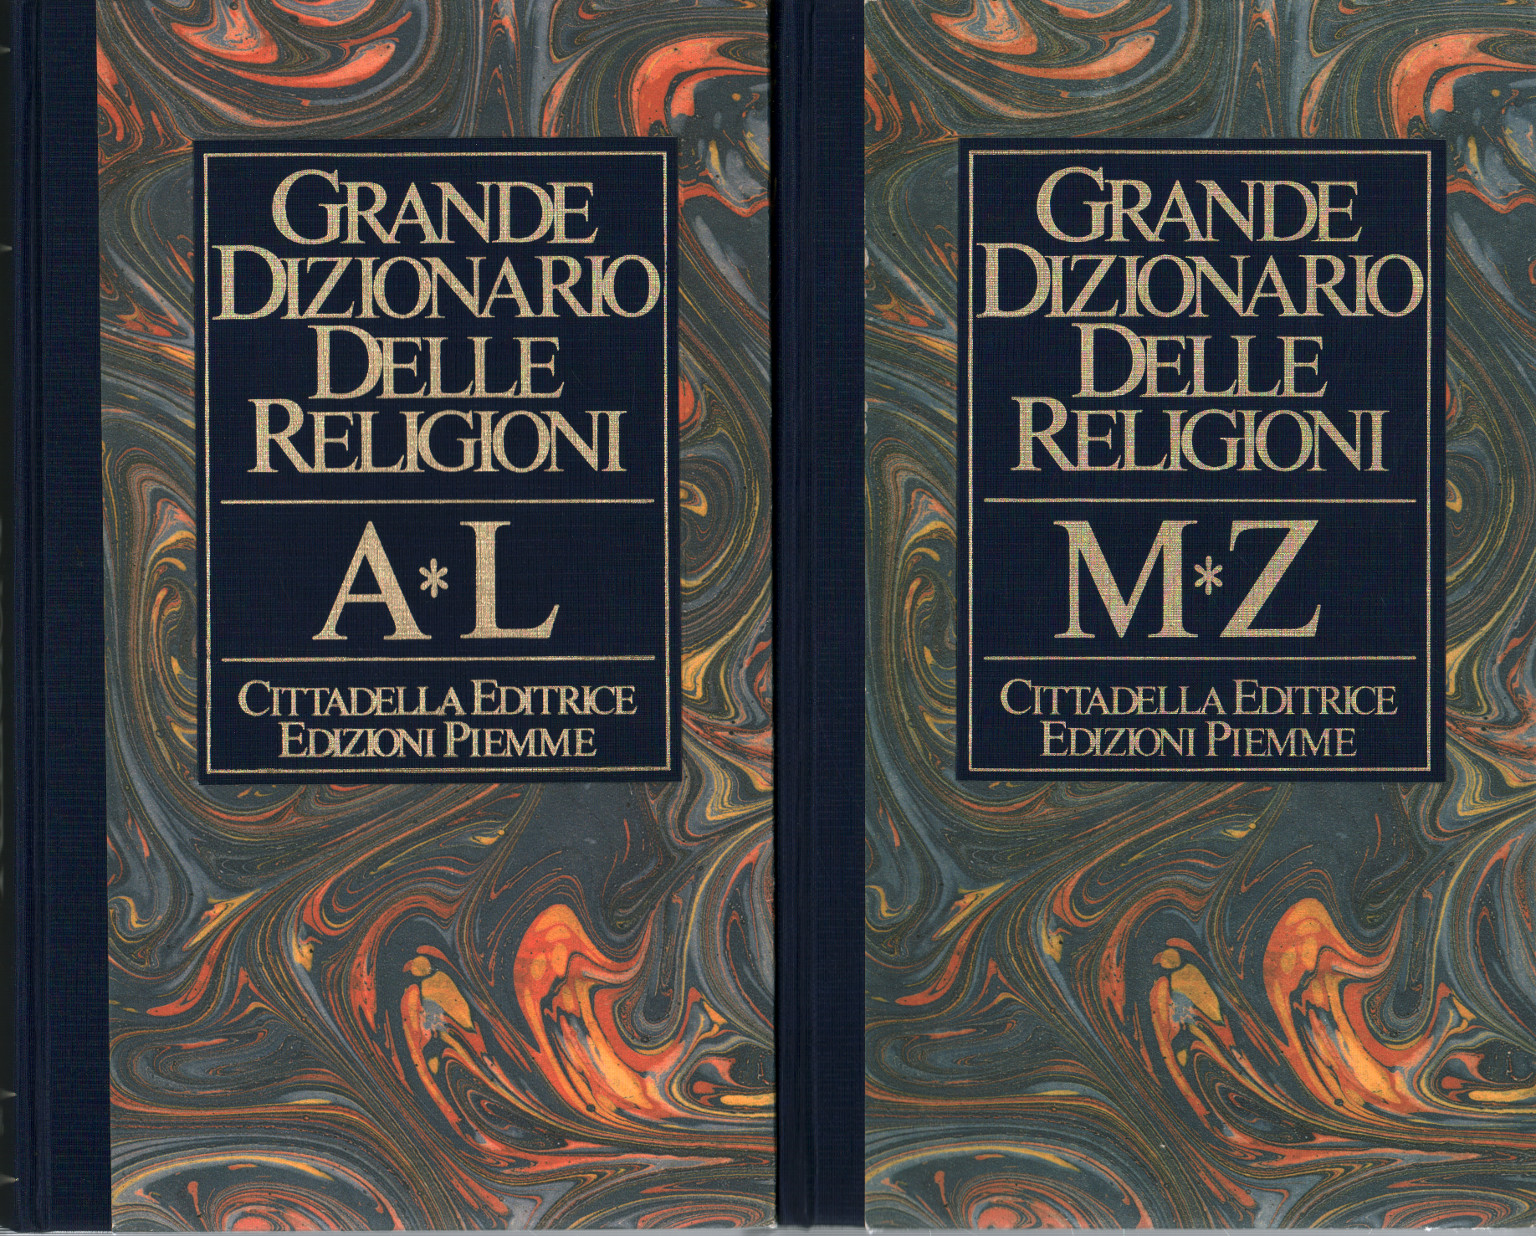 Großes wörterbuch der religionen (2 Bände), Paul Poupard